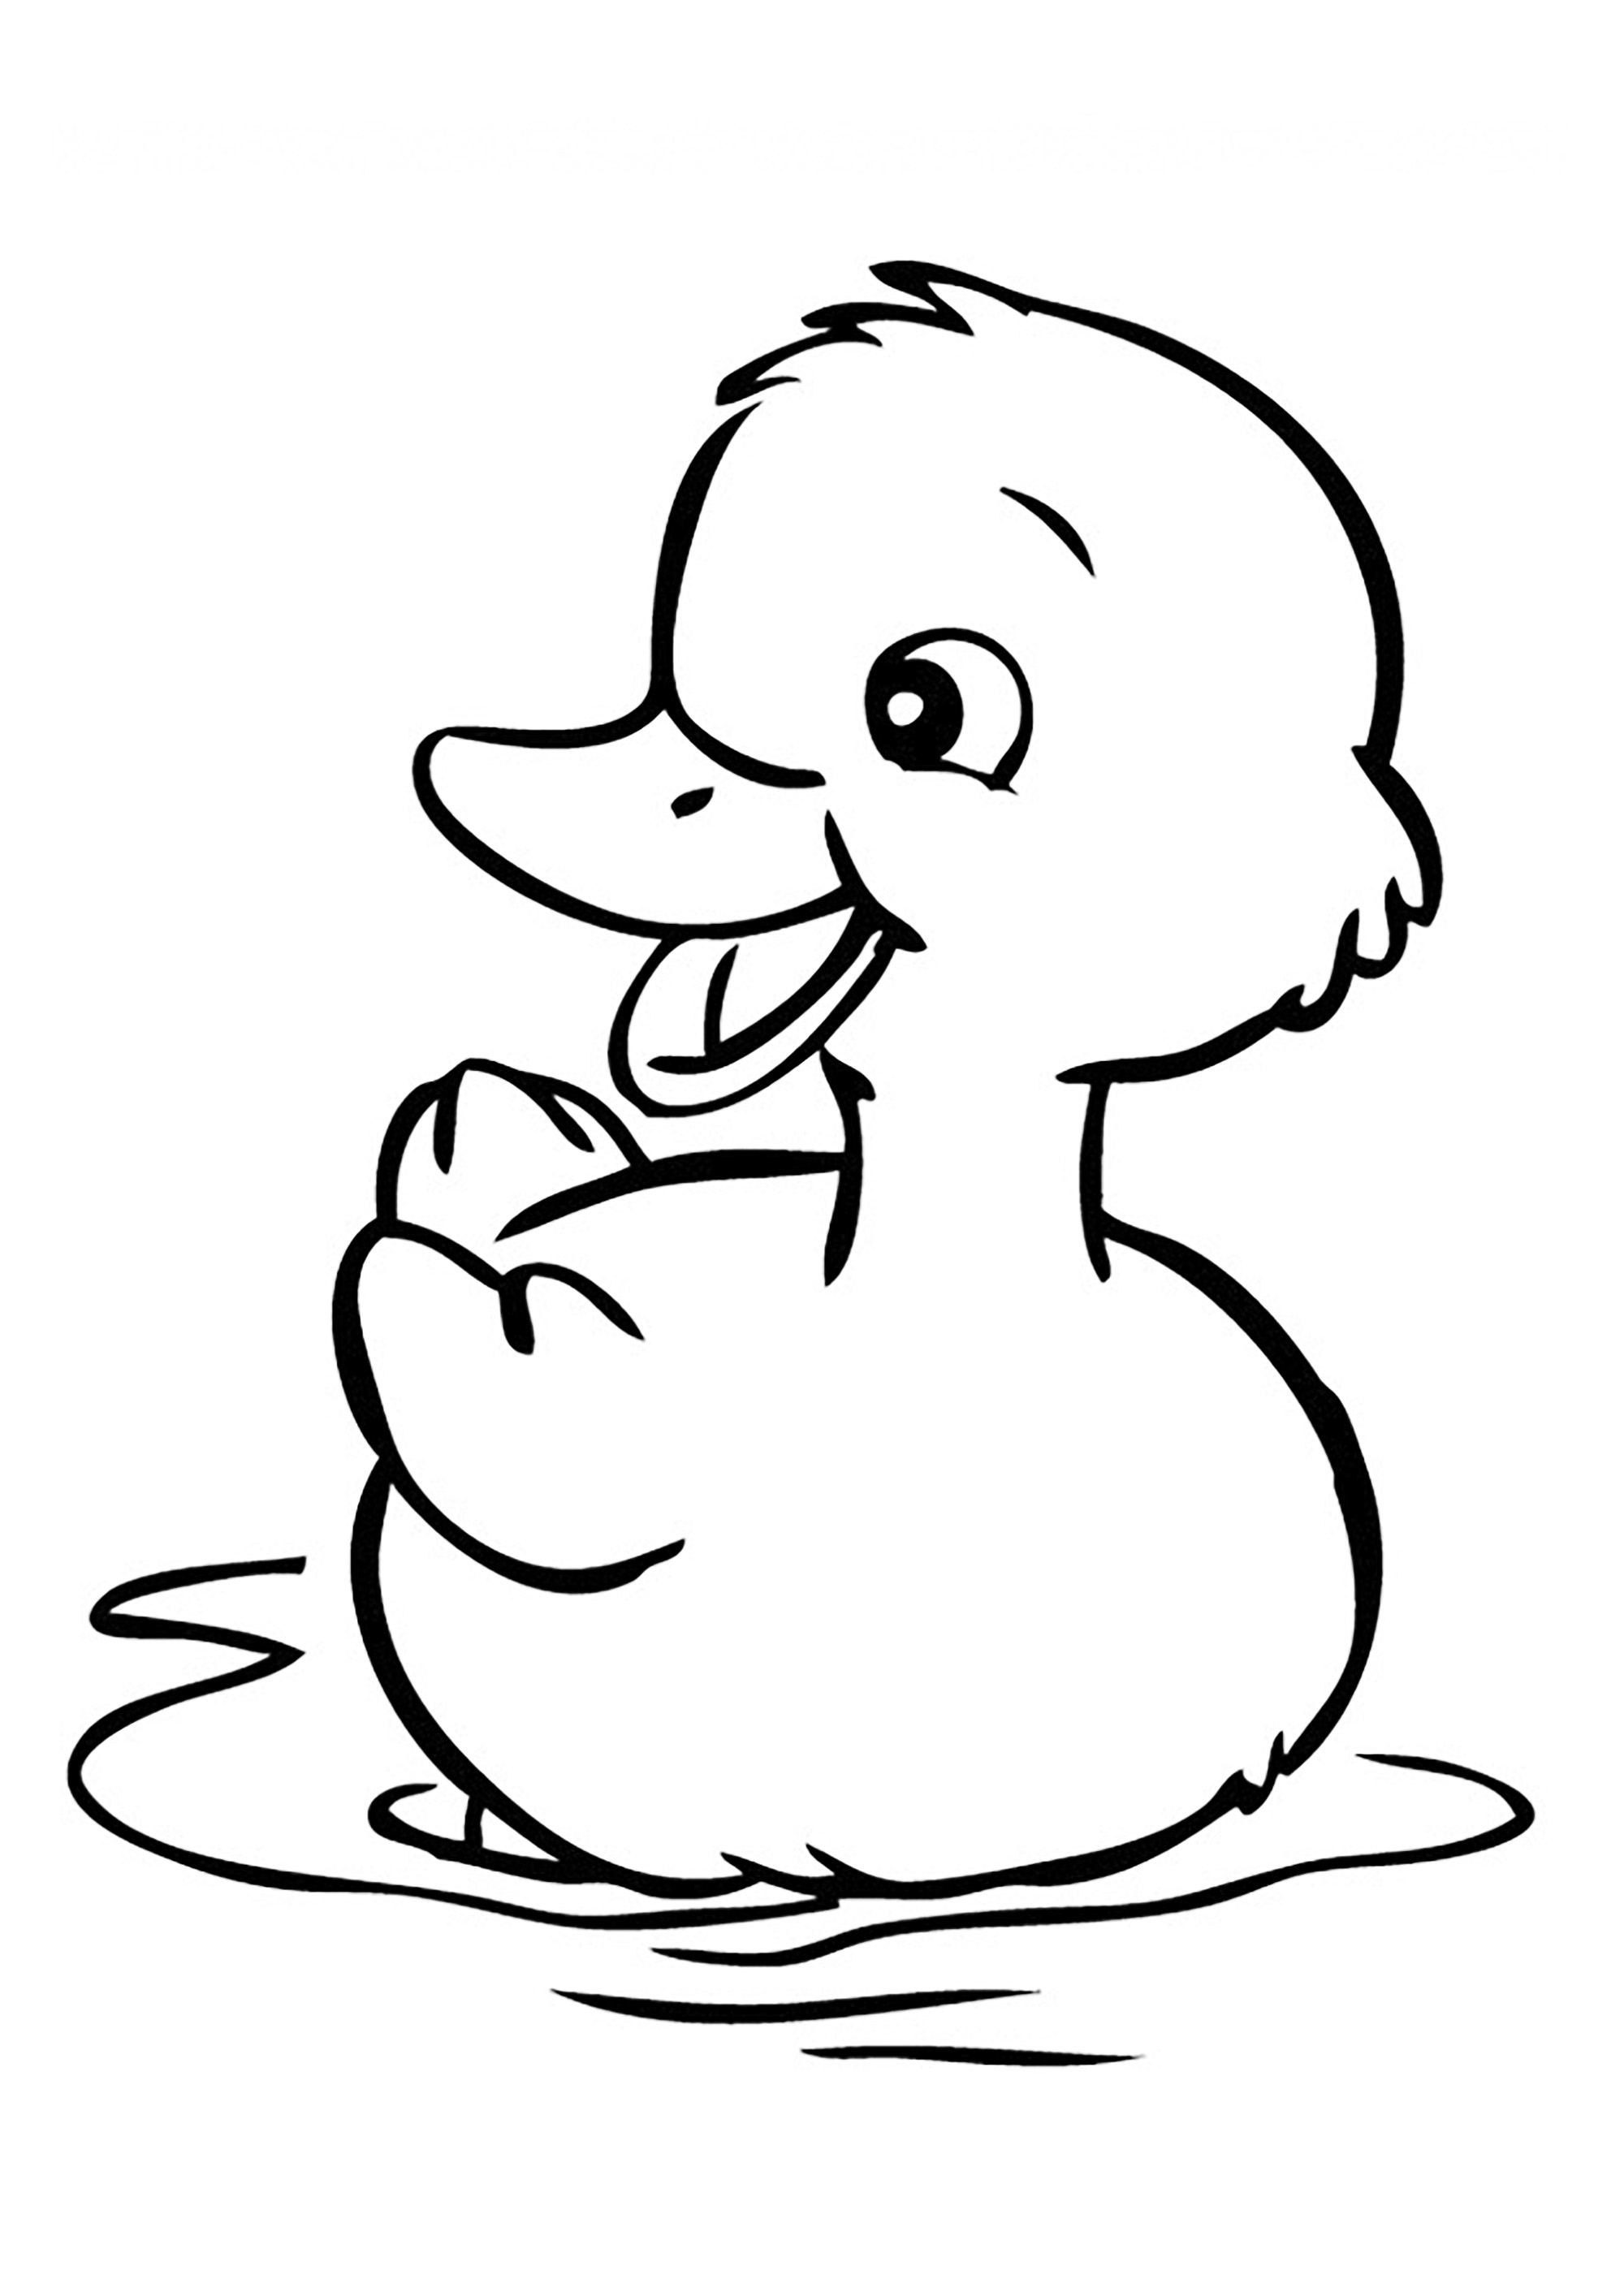 Pretty little duck